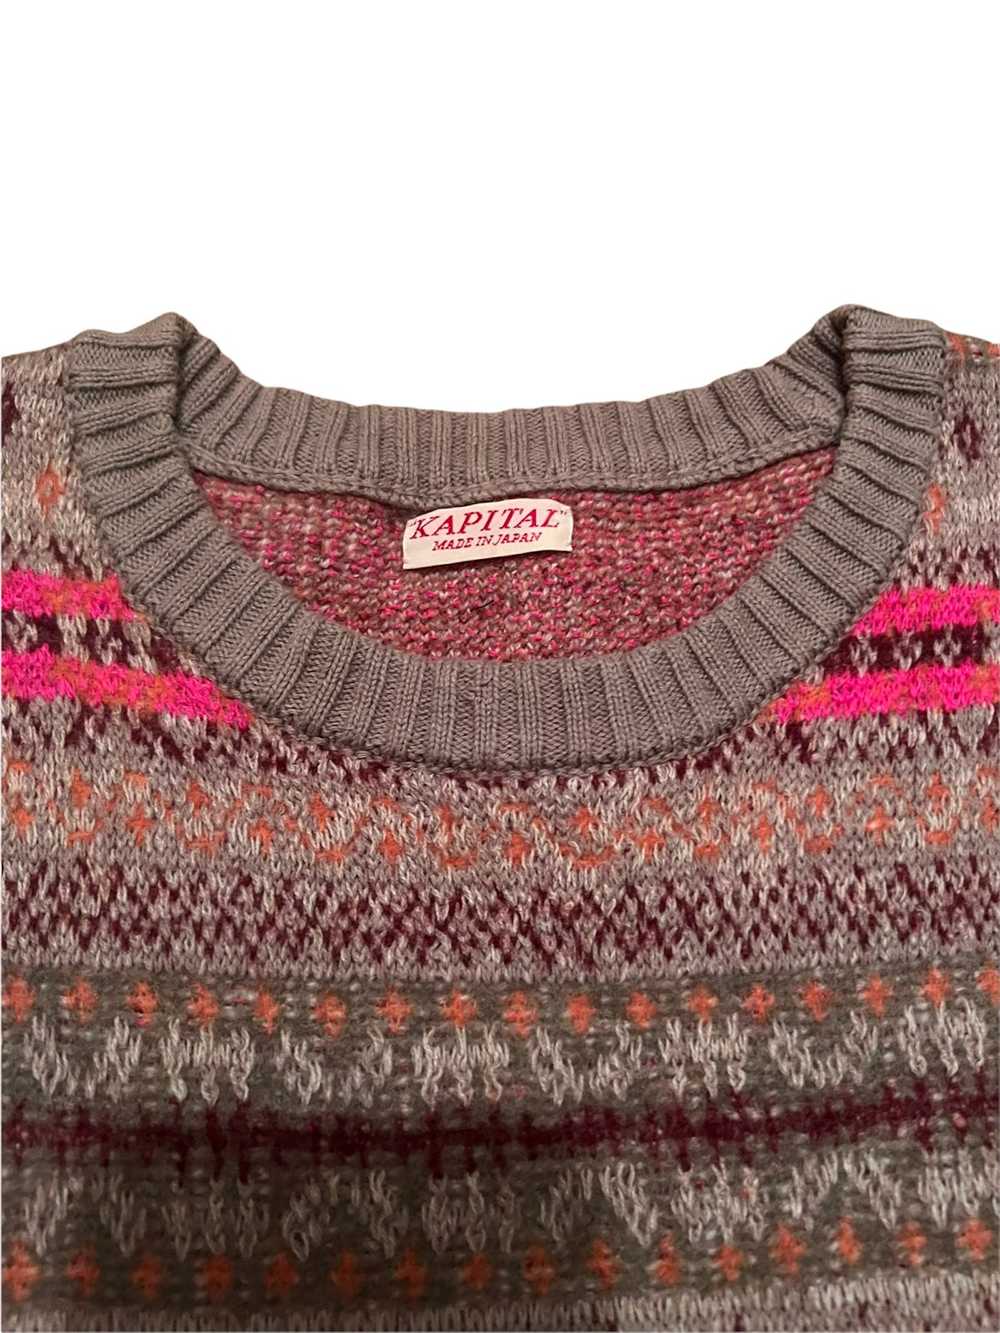 Kapital Kapital Skeleton Knit Sweater - image 6